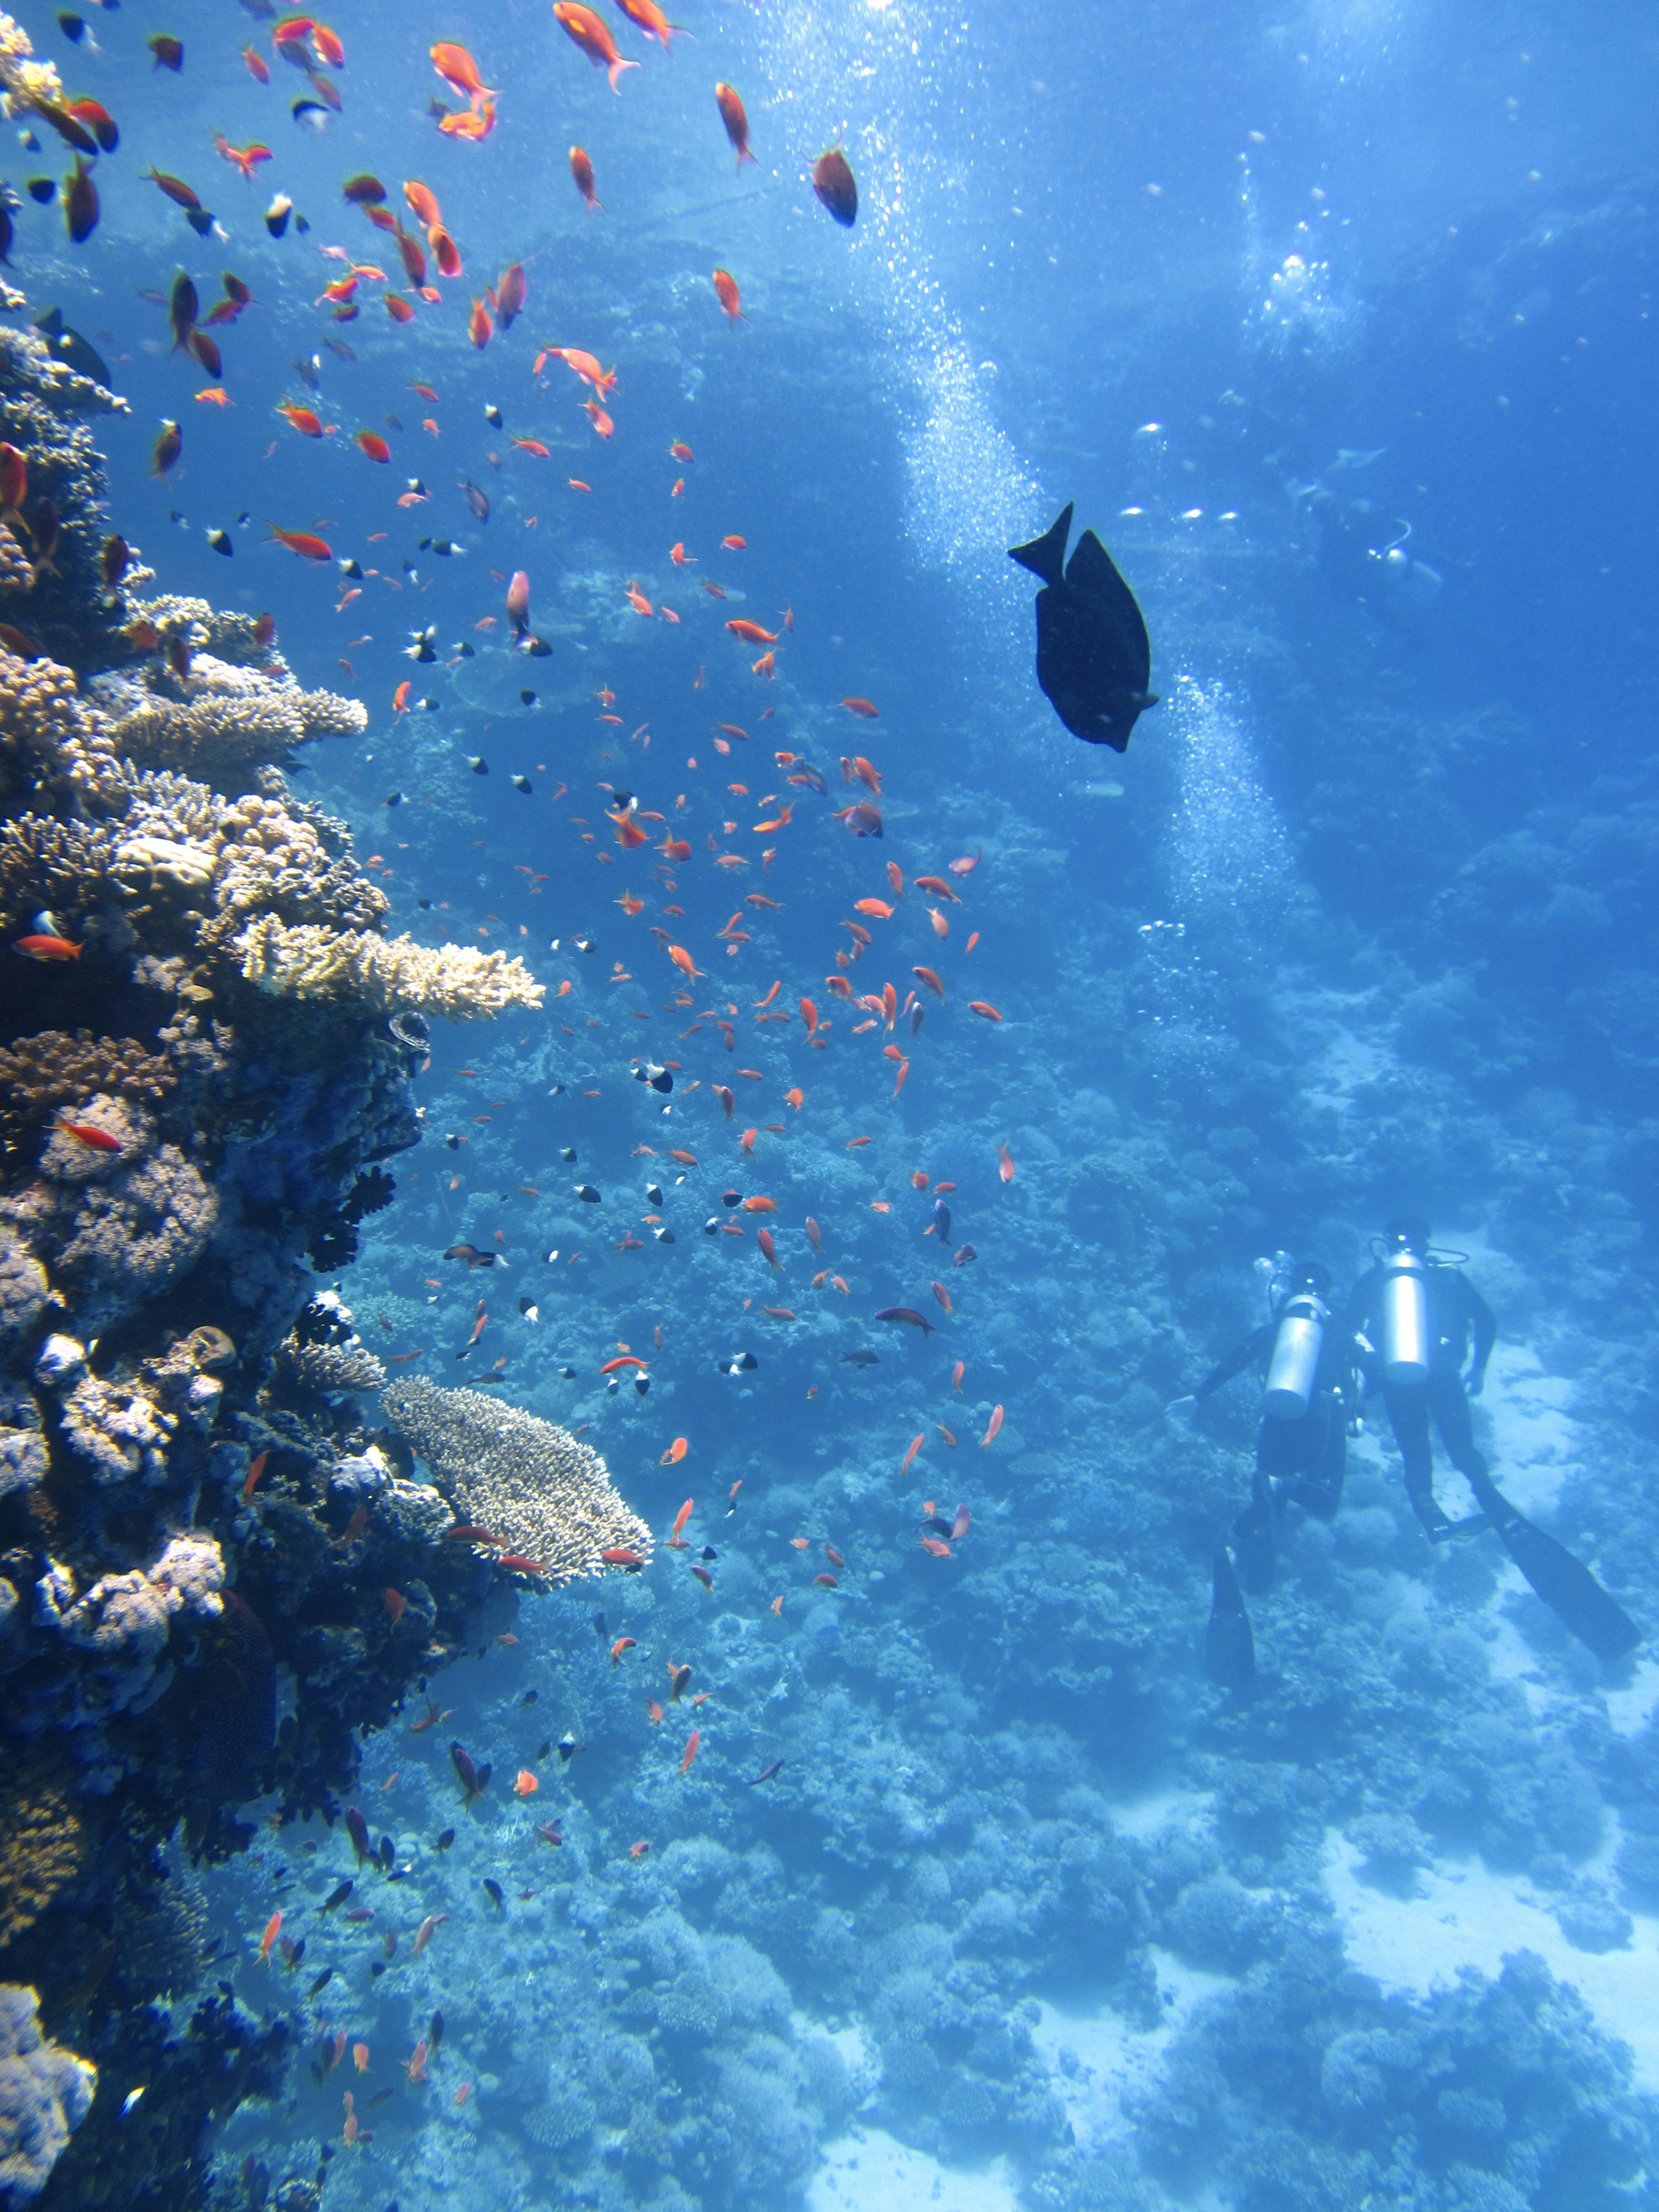 underwater coral reef hd